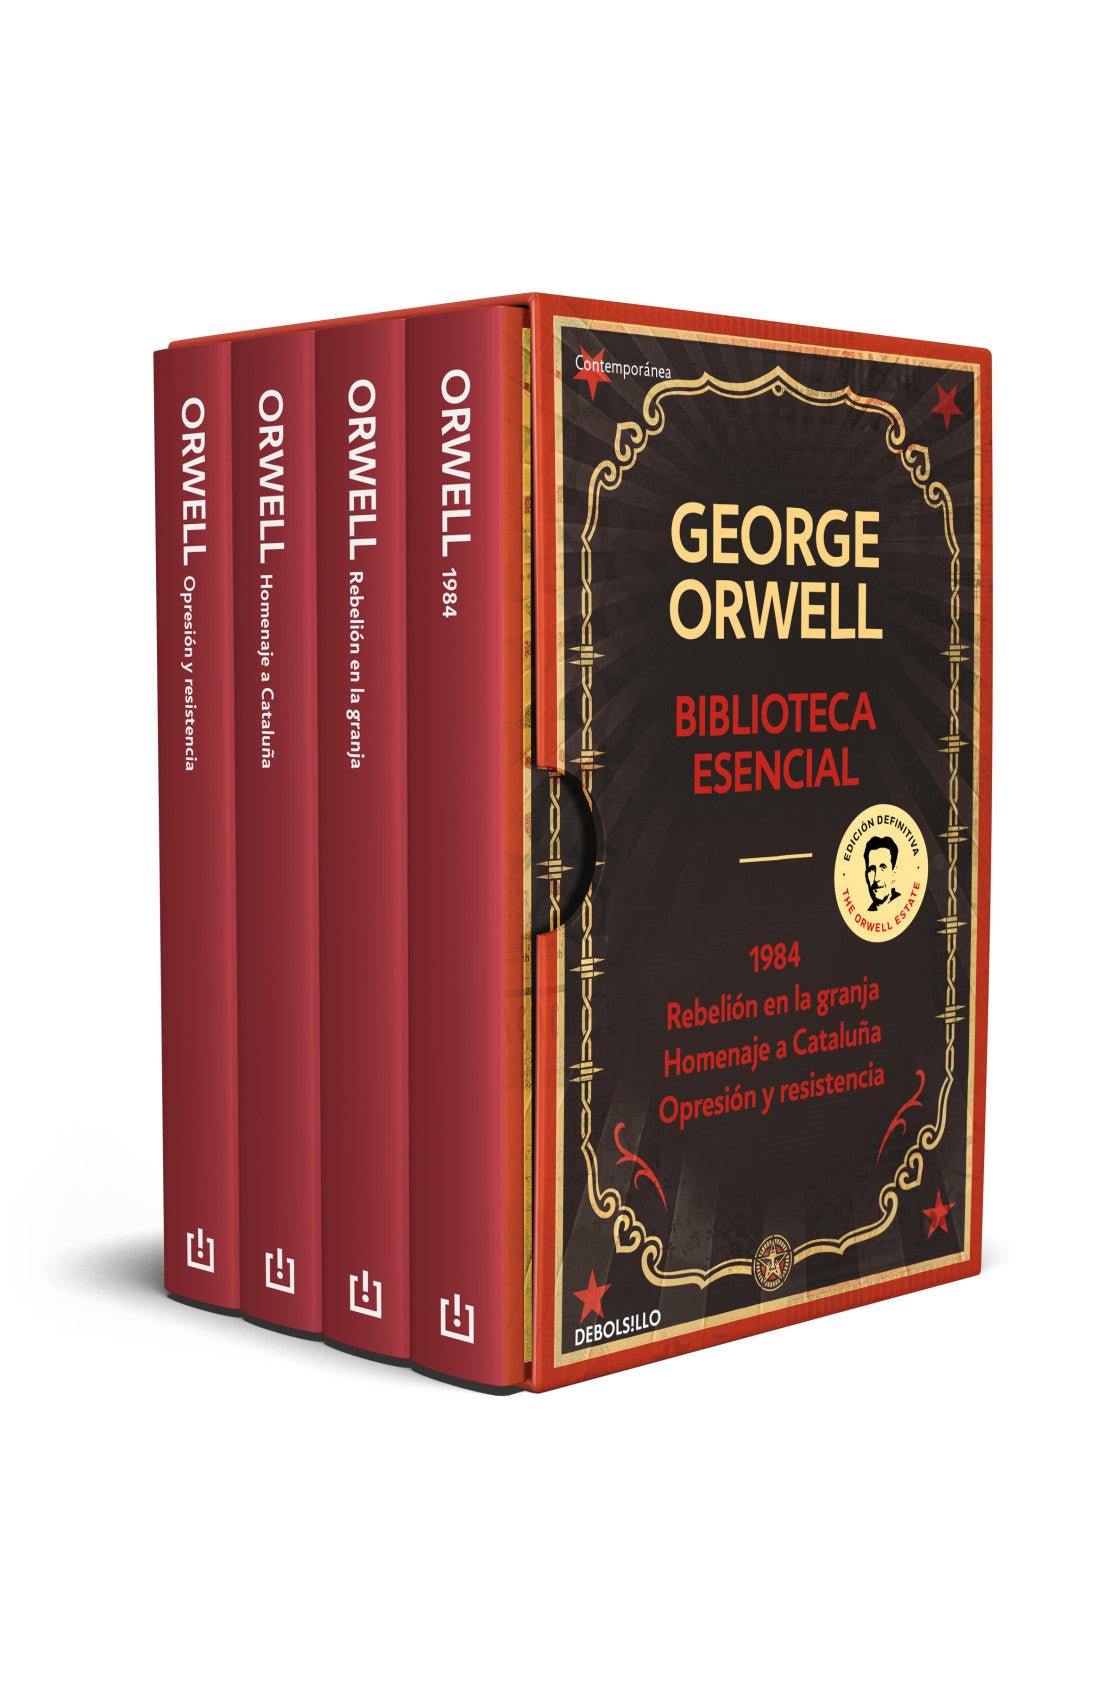 Biblioteca esencial George Orwell - (1984 | Rebelión en la granja | Homenaje a Cataluña | Opresión y resistencia)